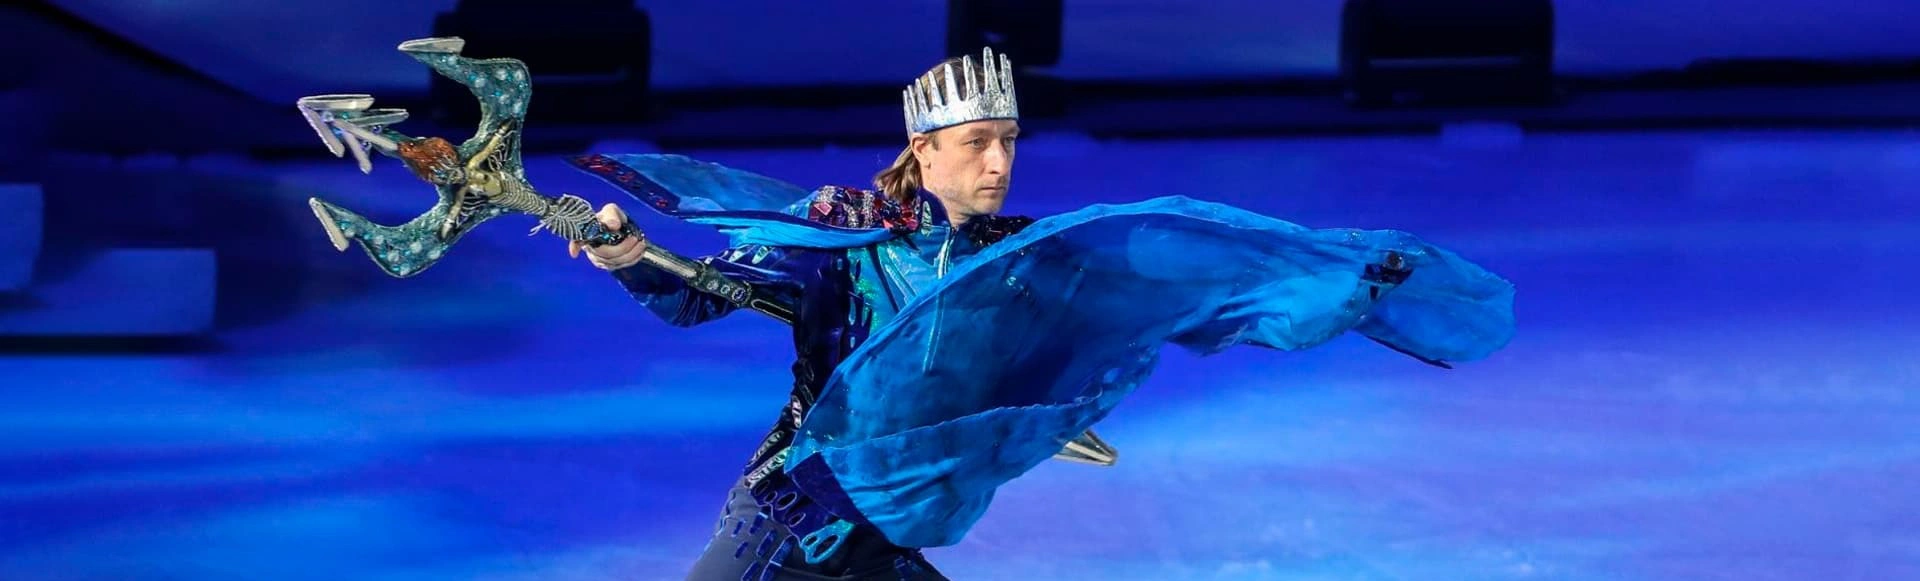 Яна Рудковская и Евгений Плющенко готовятся представить уникальное шоу на льду под названием «Русалочка»!